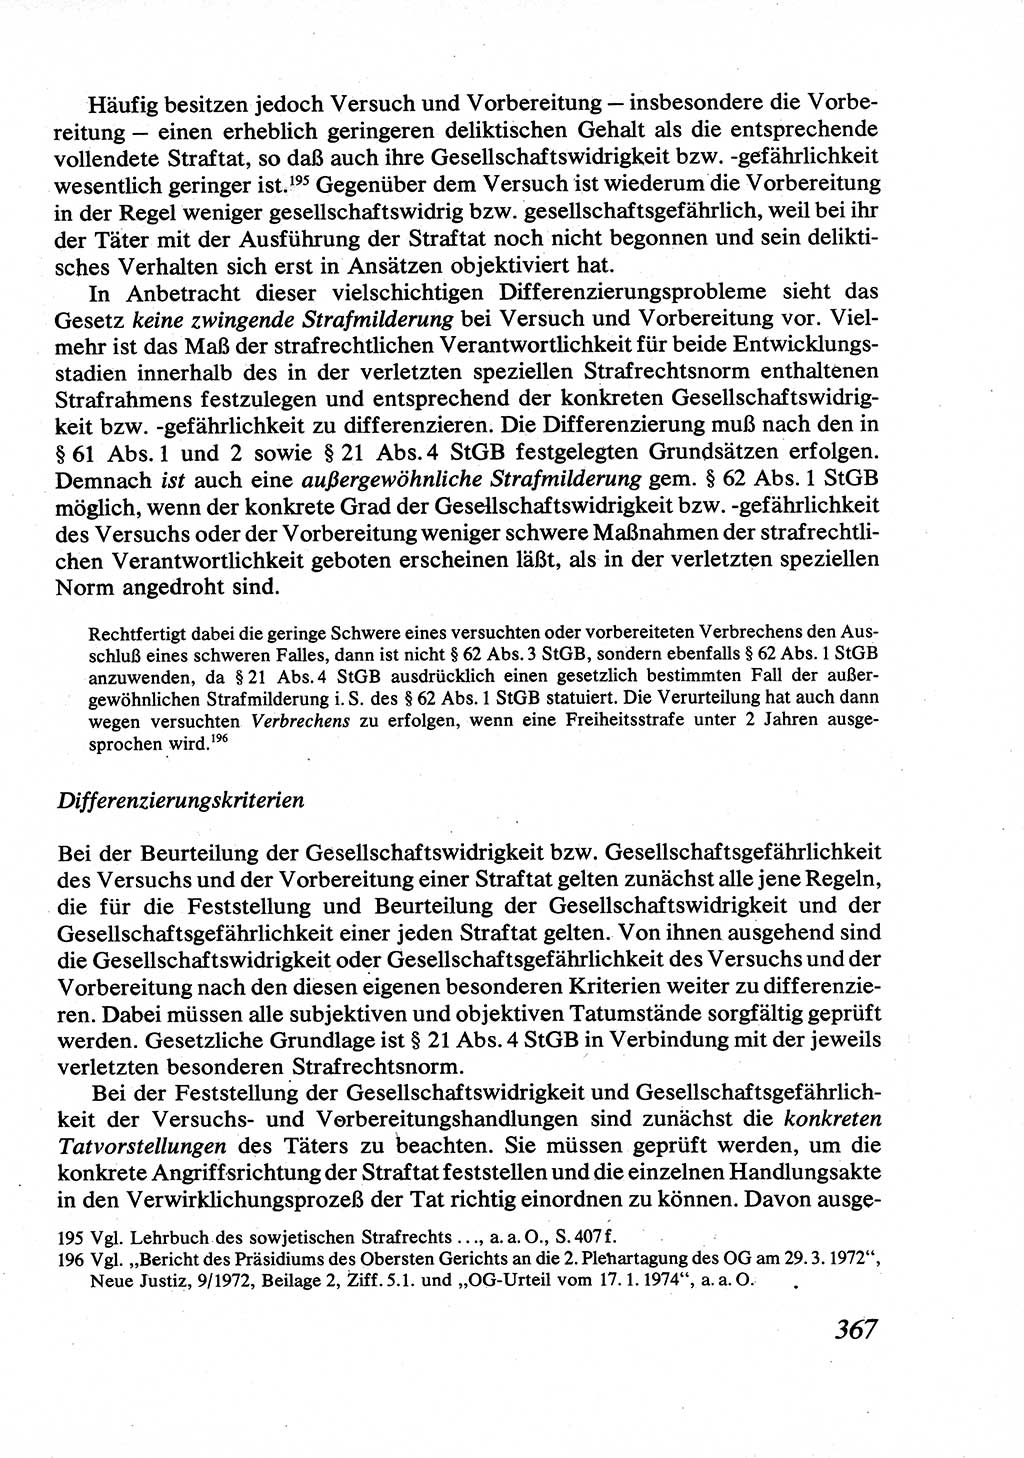 Strafrecht [Deutsche Demokratische Republik (DDR)], Allgemeiner Teil, Lehrbuch 1976, Seite 367 (Strafr. DDR AT Lb. 1976, S. 367)